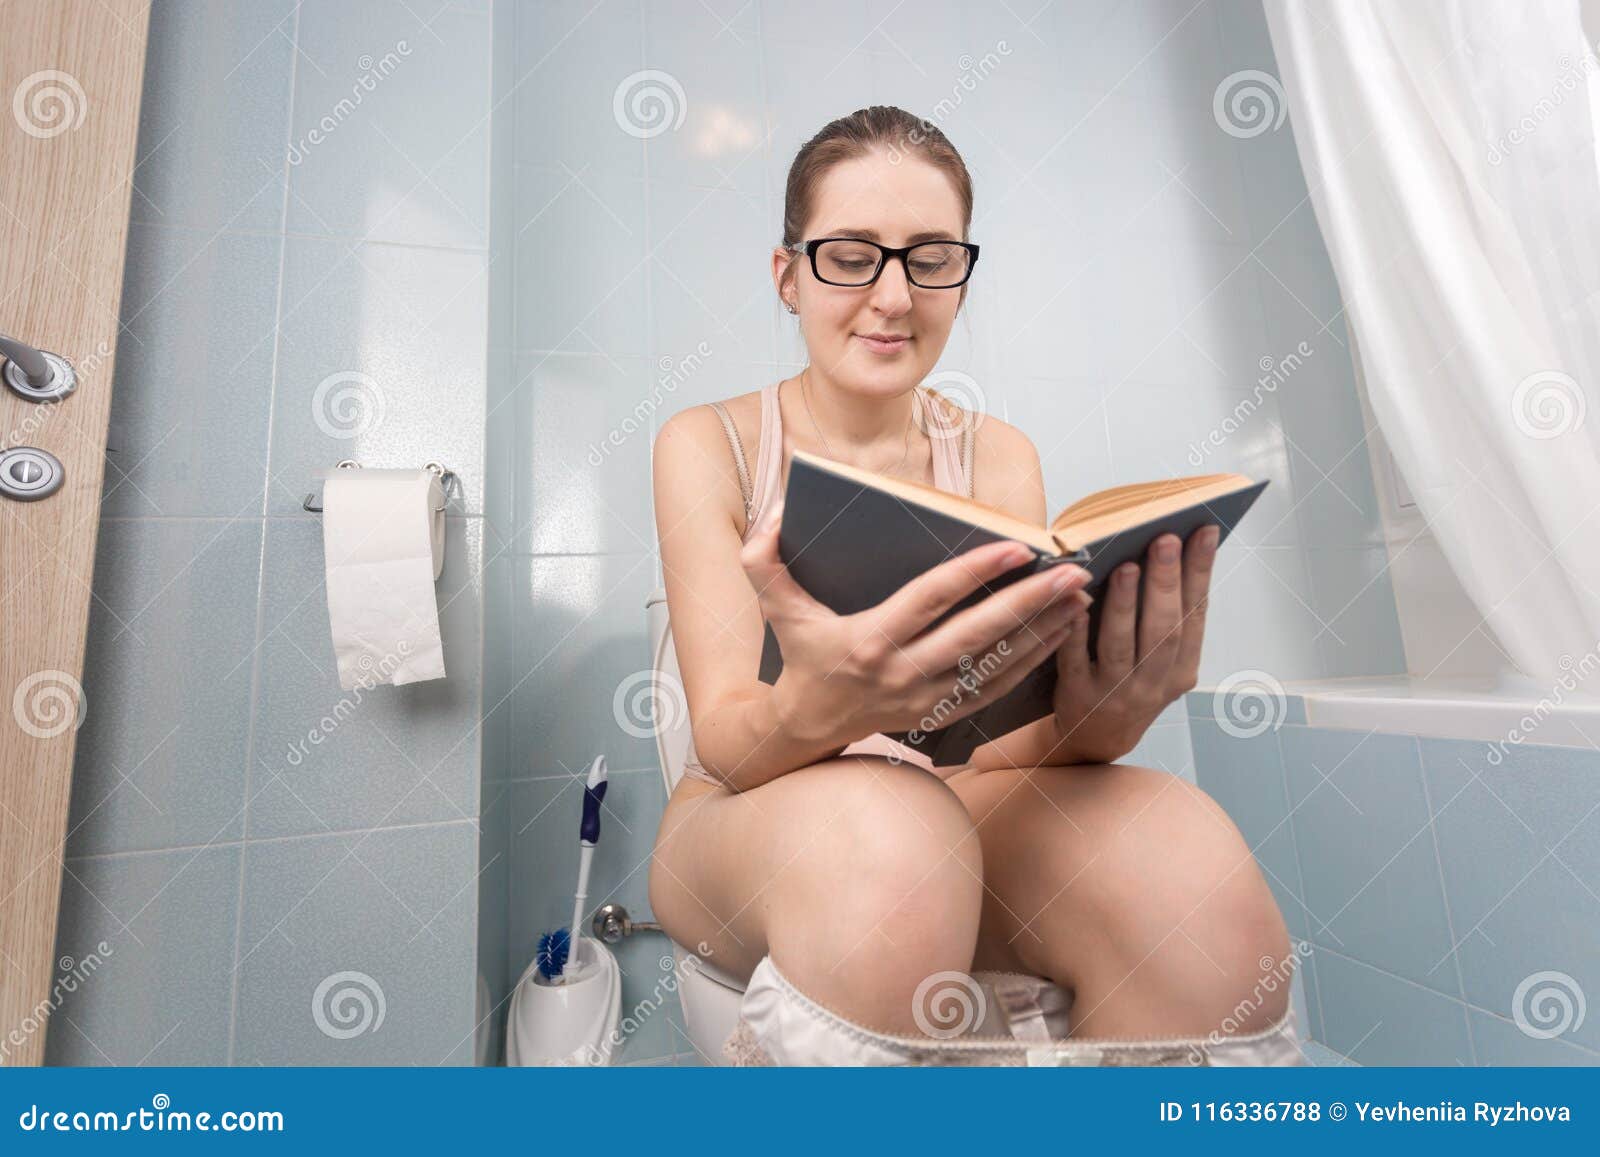 Stående av den unga nerdy kvinnan med glasögon som sitter på toalett och läseboken. Ung nerdy kvinna med glasögon som sitter på toalett och läseboken